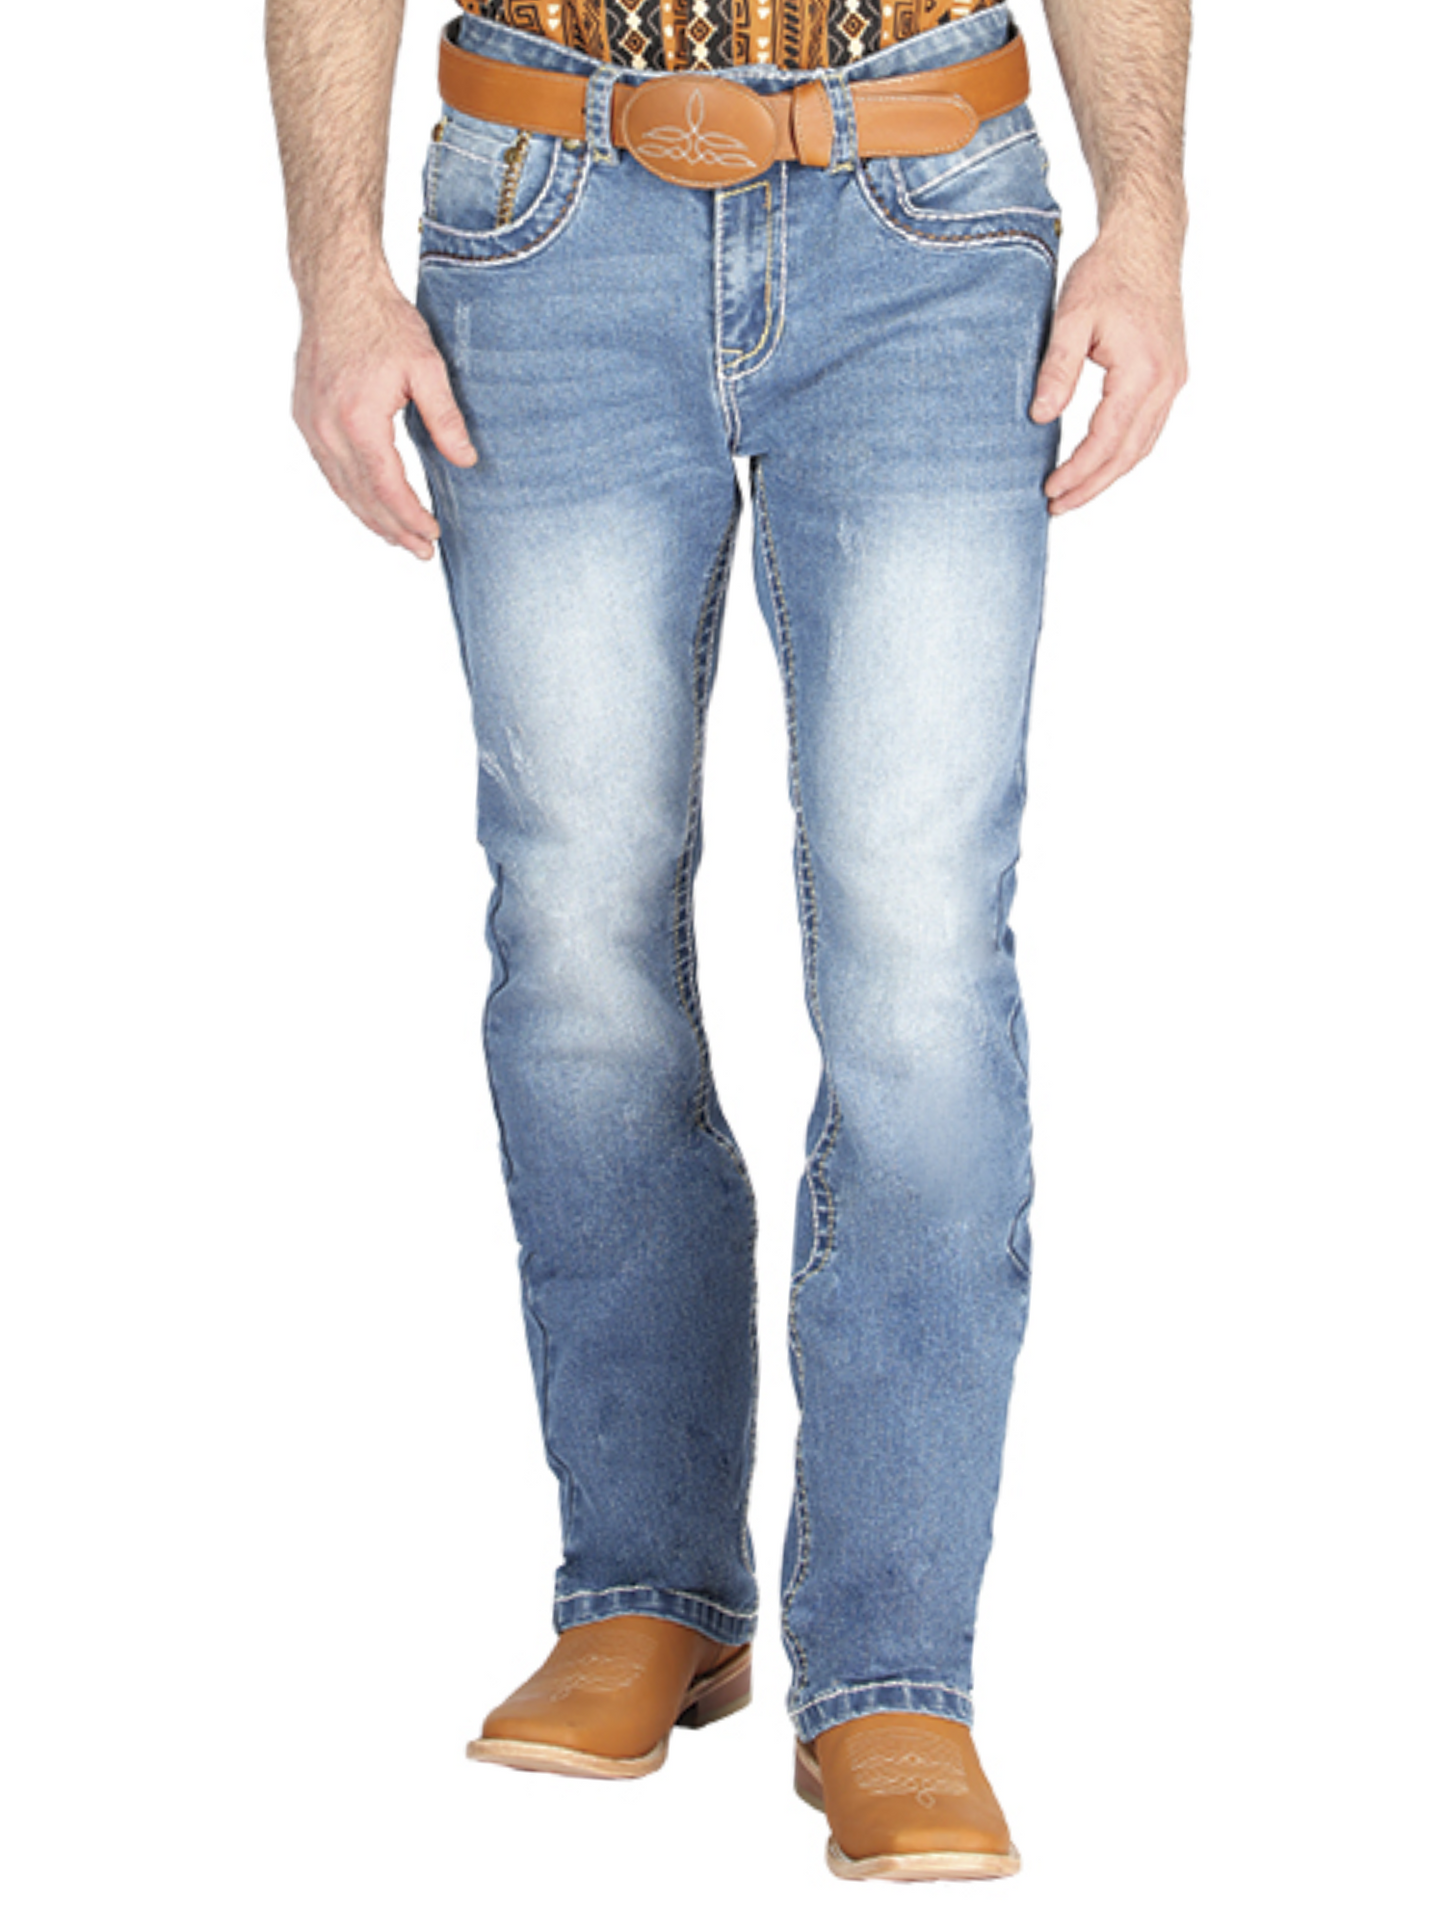 Pantalon Vaquero de Mezclilla Boot Cut Azul Claro para Hombre 'Centenario' - ID: 44836 Denim Jeans Centenario 